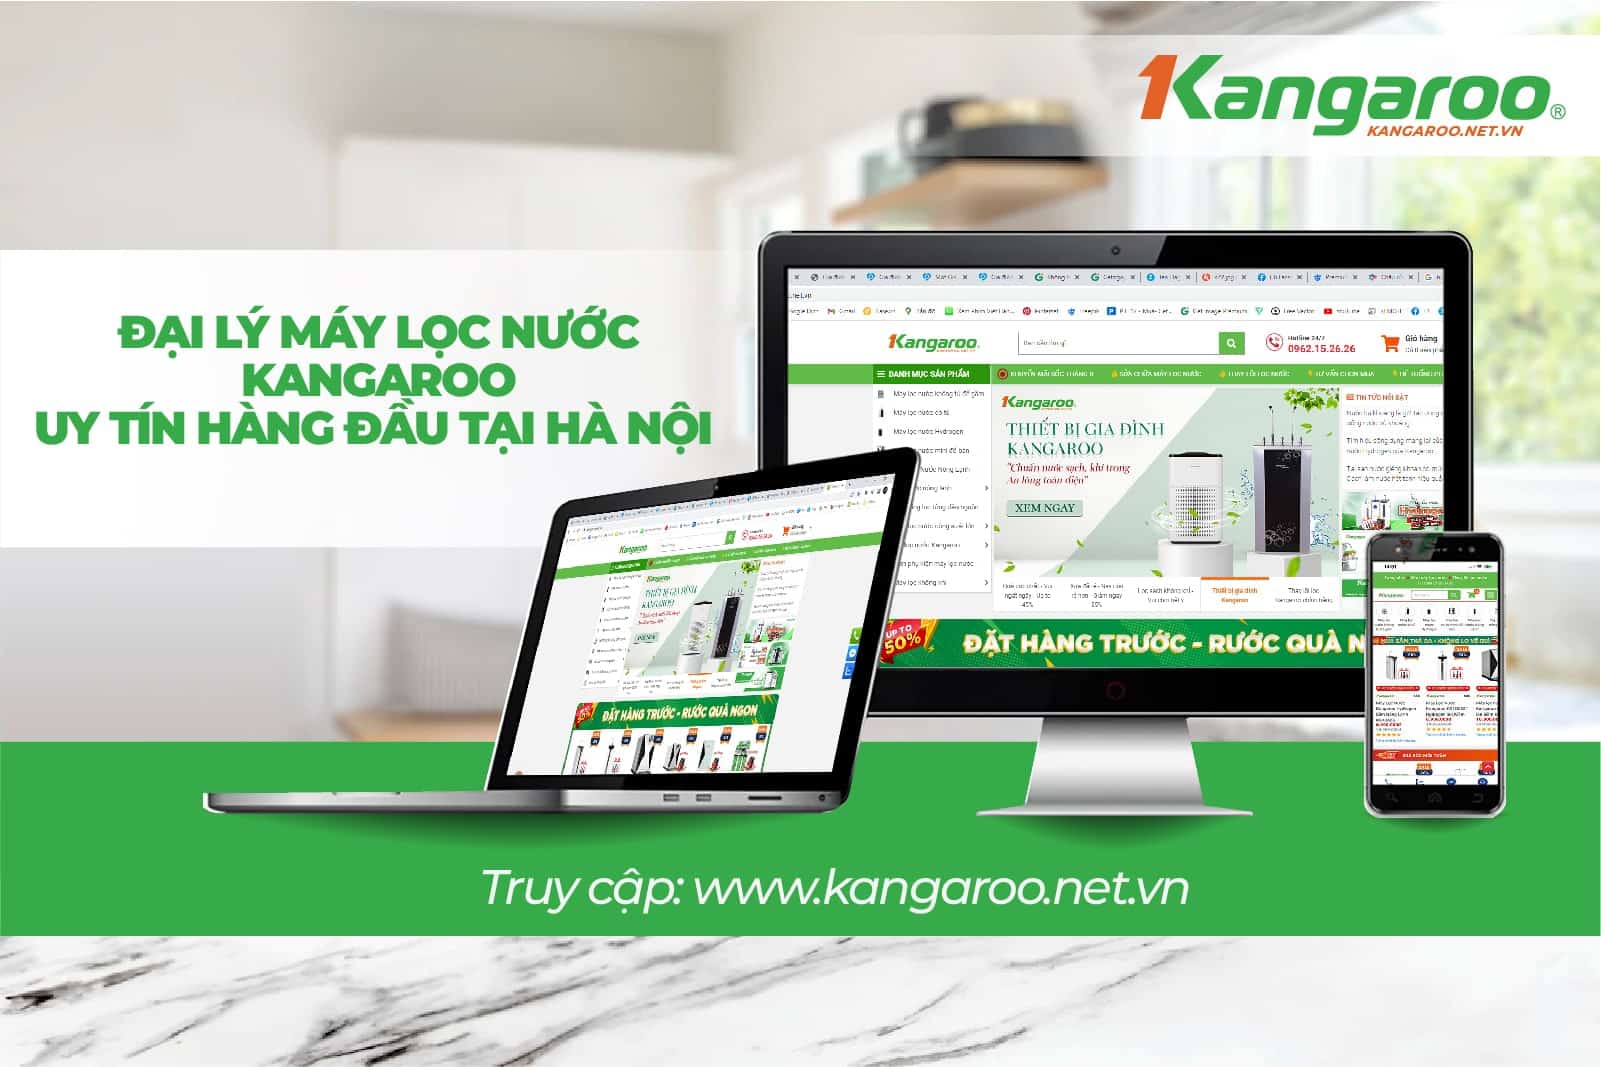 Kangaroo.net.vn - Địa chỉ mua cây nước nóng lạnh Kangaroo KG37N giá tốt nhất